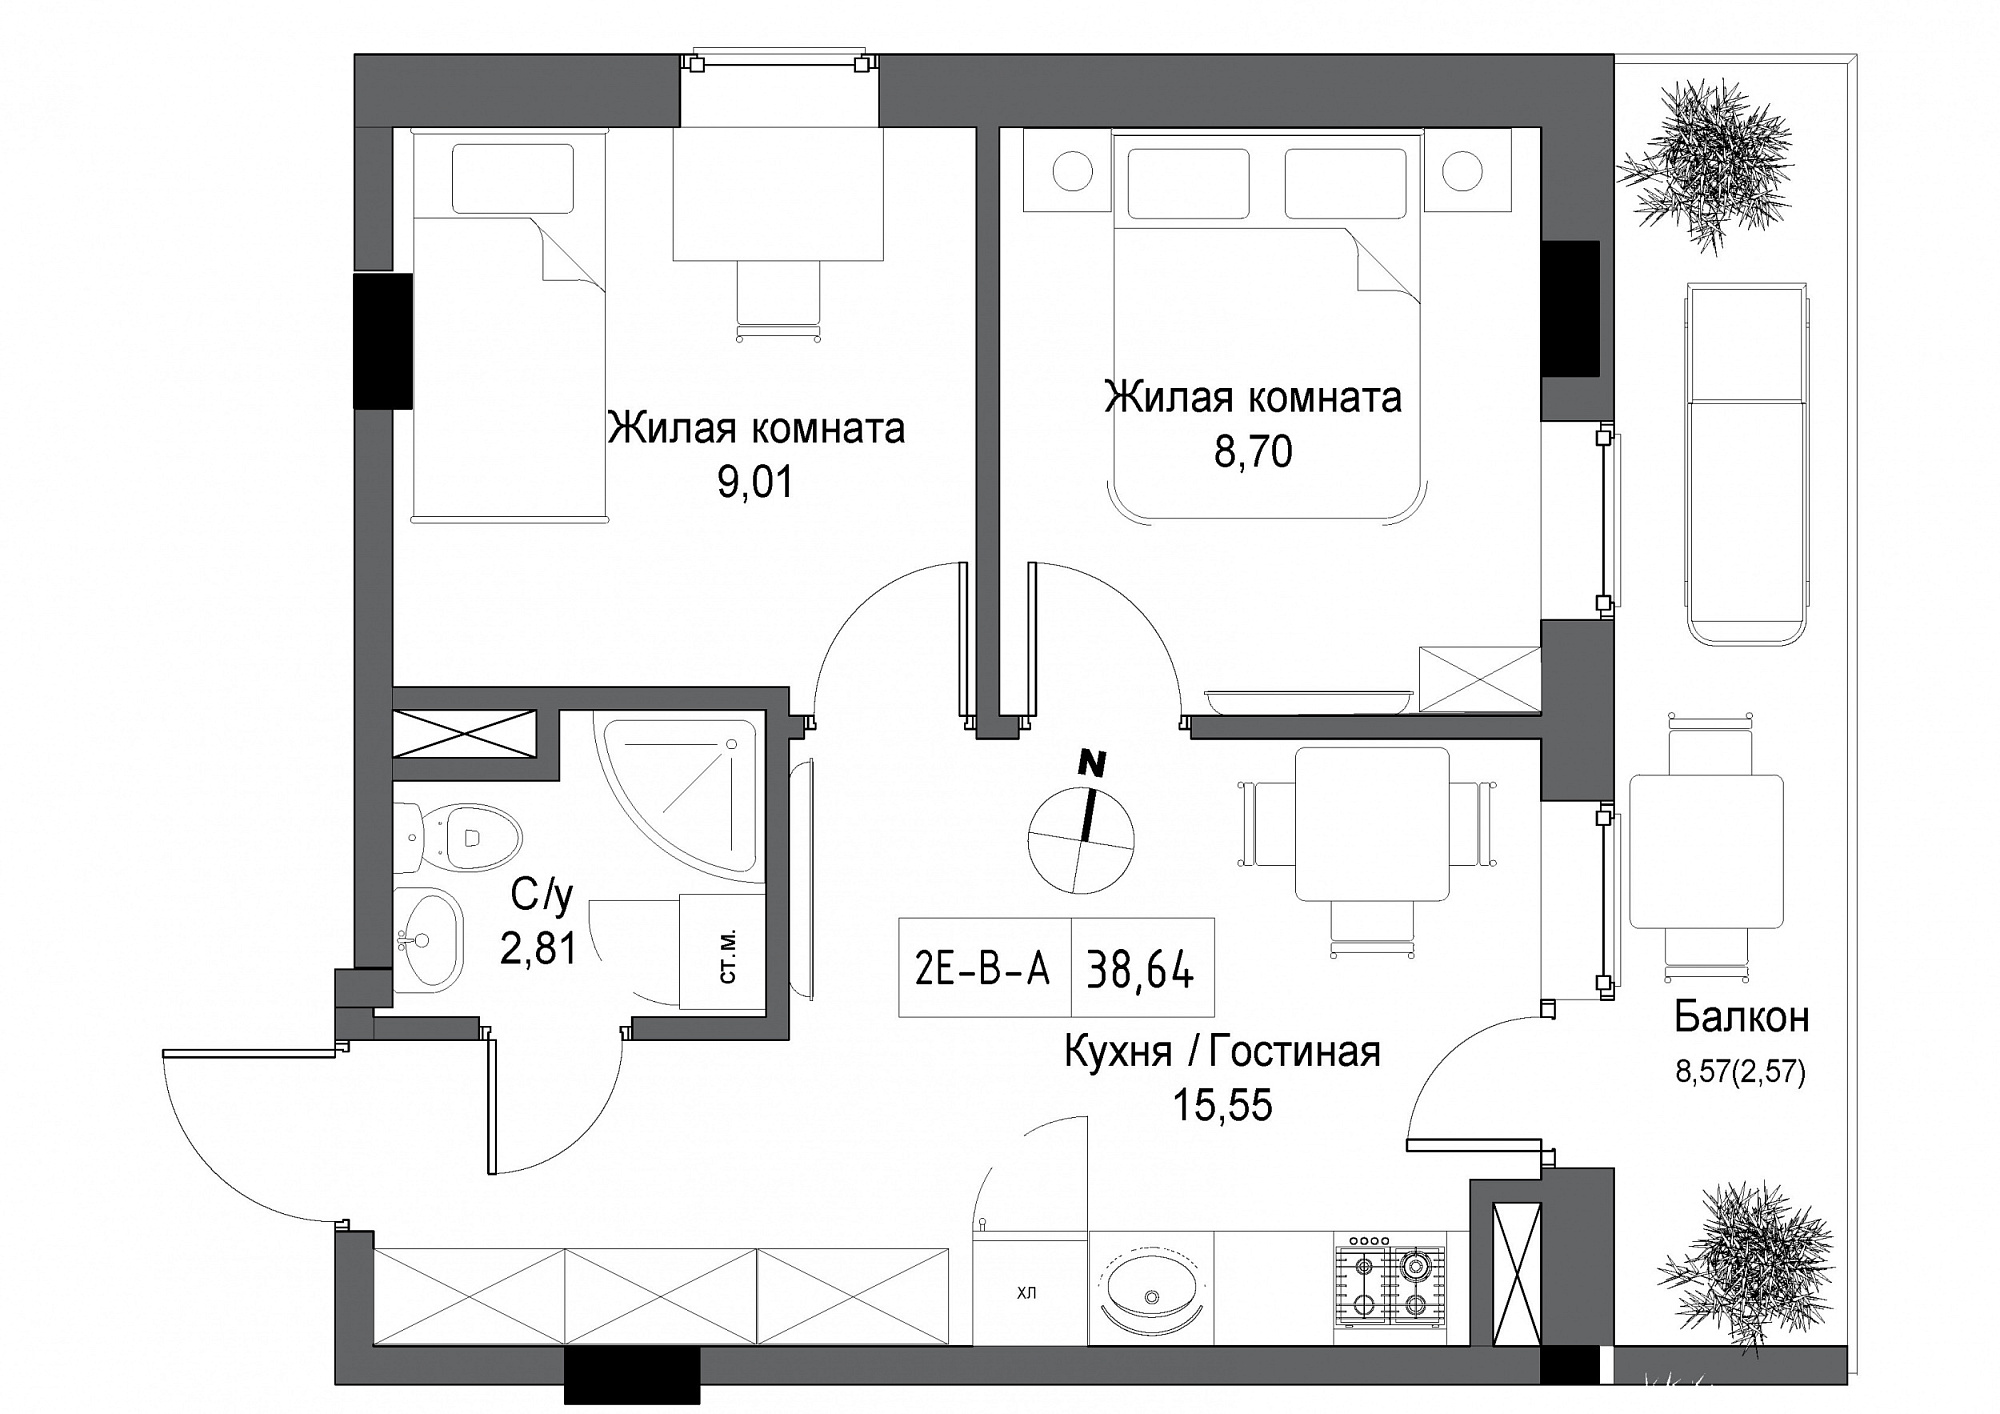 Планировка 2-к квартира площей 38.64м2, UM-004-04/0005.